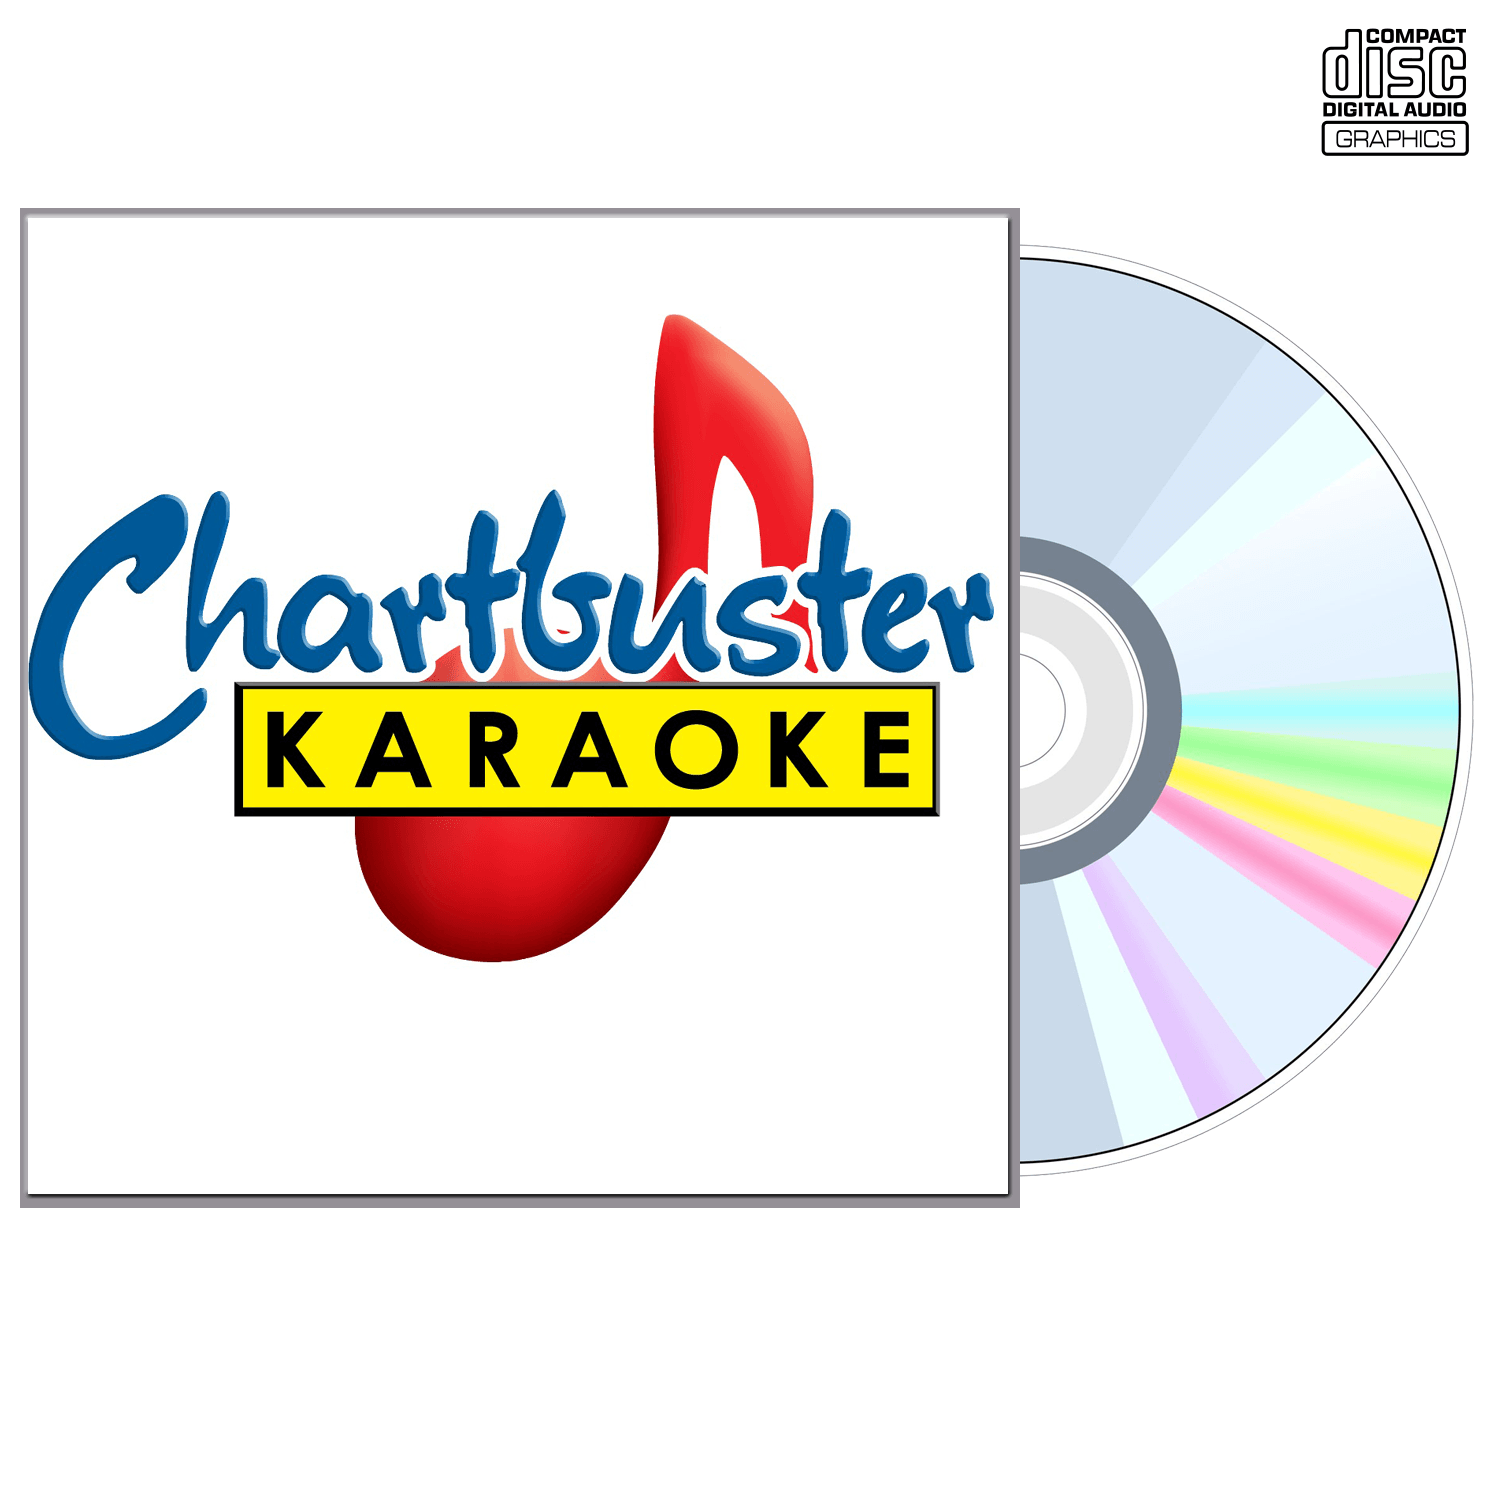 Blue County - CD+G - Chartbuster Karaoke - Karaoke Home Entertainment